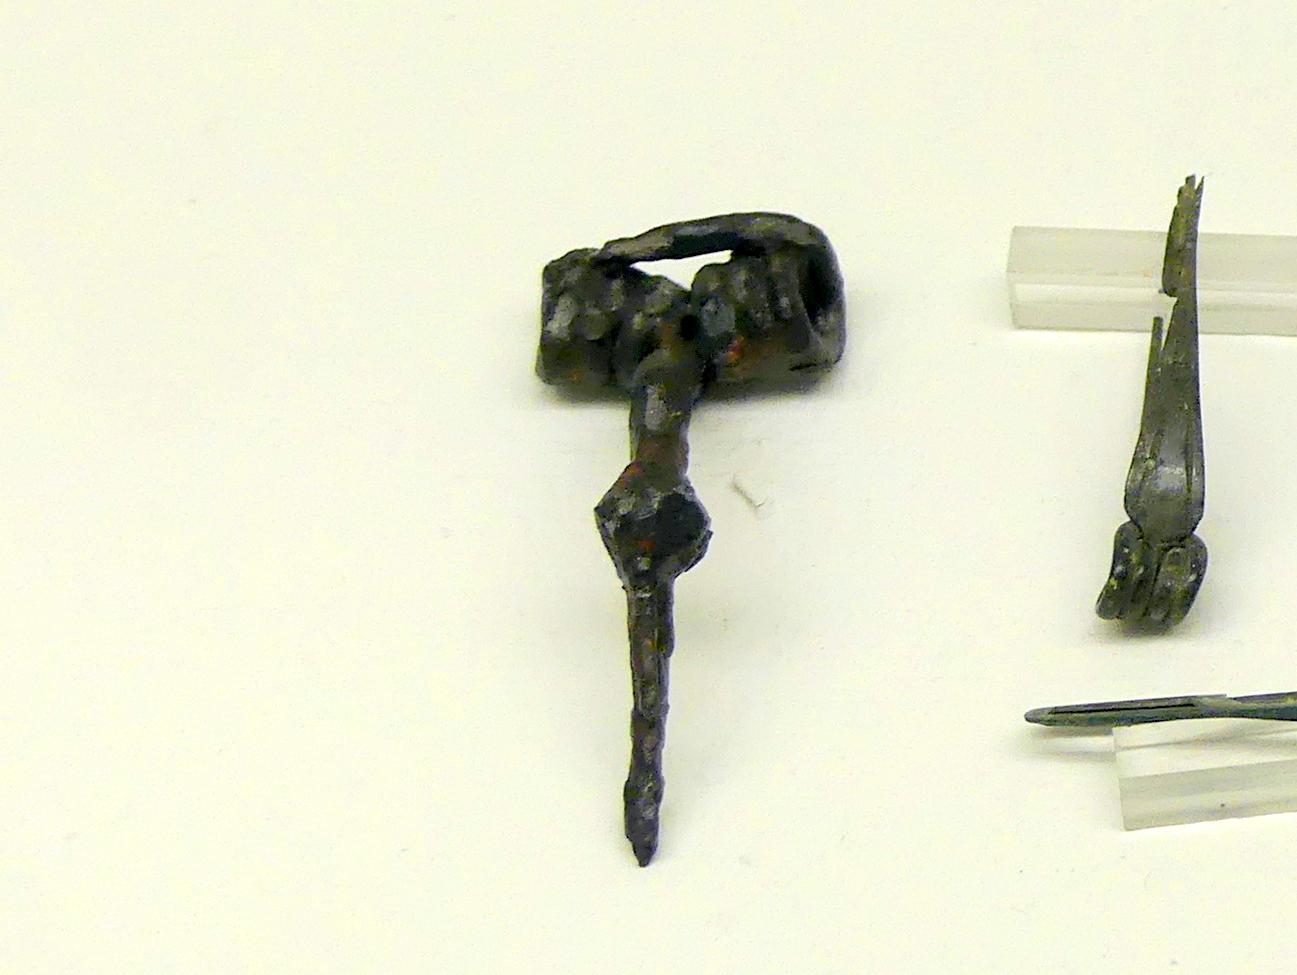 Fragment einer Eisenfibel, Spätlatènezeit D, 700 - 100 v. Chr., Bild 1/2